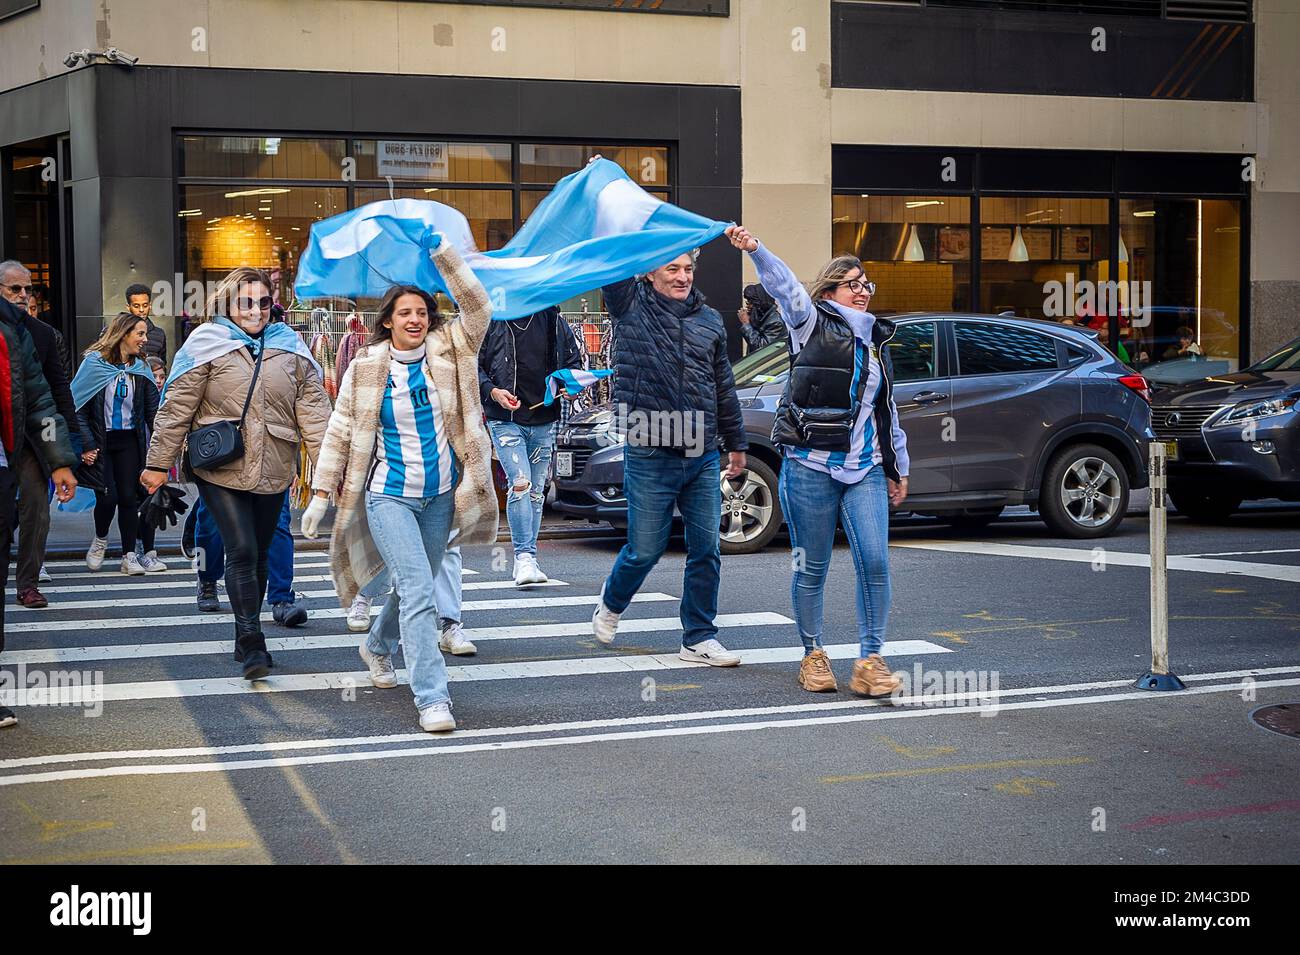 Gli appassionati di calcio argentini e i loro sostenitori festeggiano domenica 18 dicembre 2022 a Midtown Manhattan a New York dopo che l'Argentina sconfigge la Francia in un emozionante gioco per vincere la Coppa del mondo FIFA. (© Richard B. Levine) Foto Stock